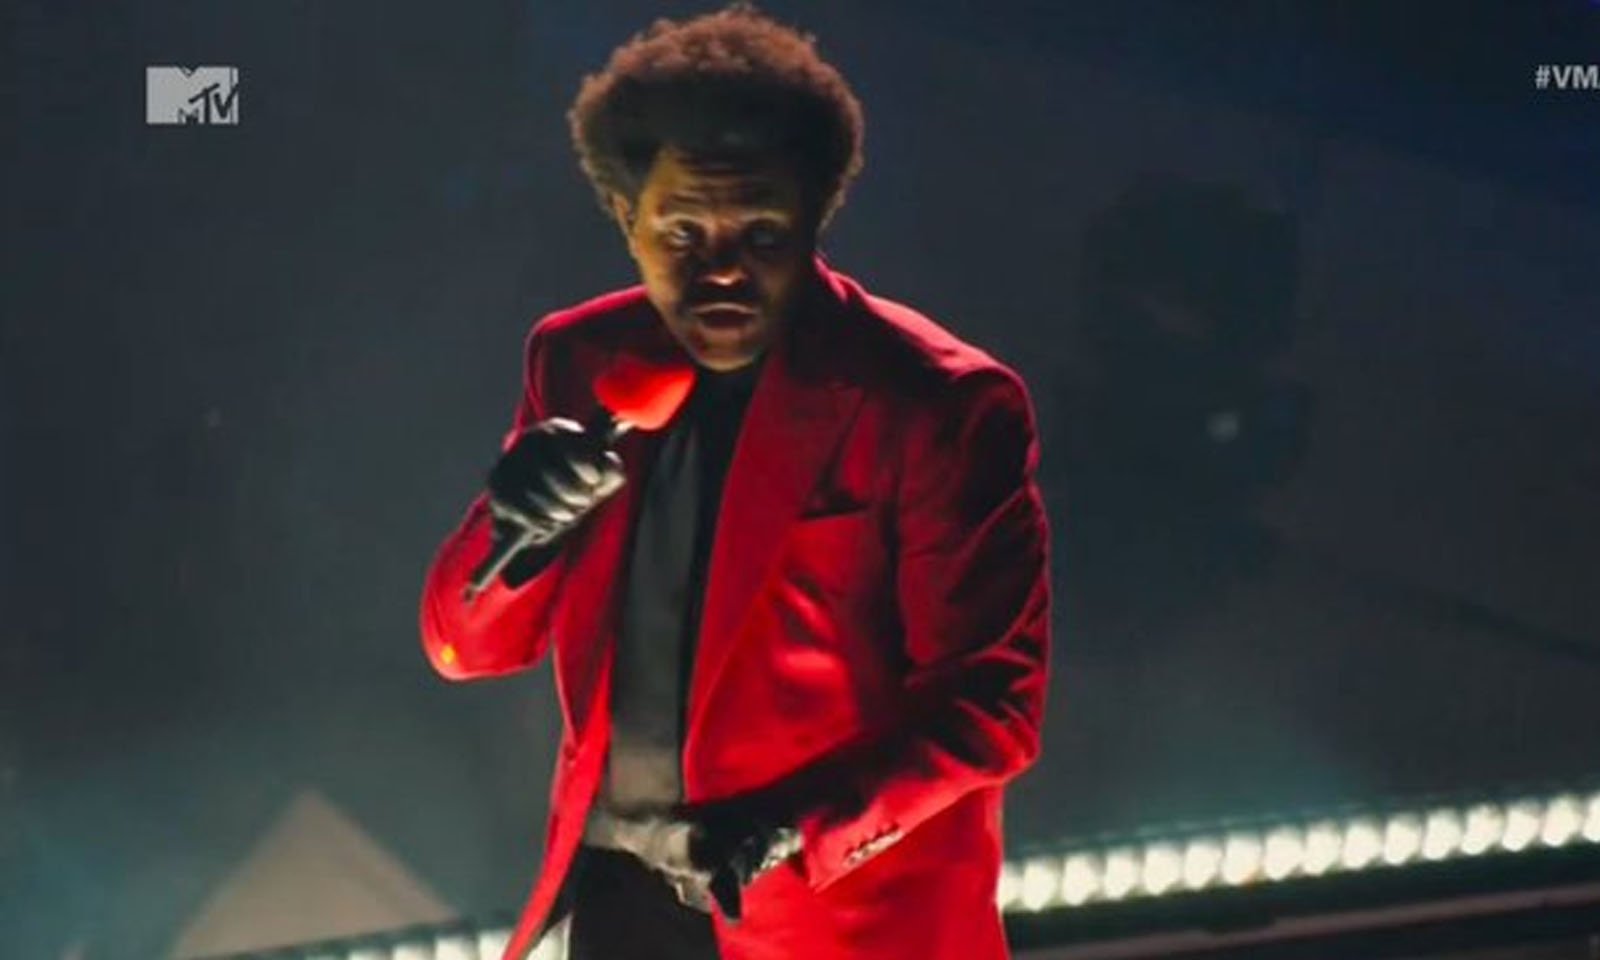 VMA 2020: The Weeknd abre premiação com icônica performance de “Blinding Lights”